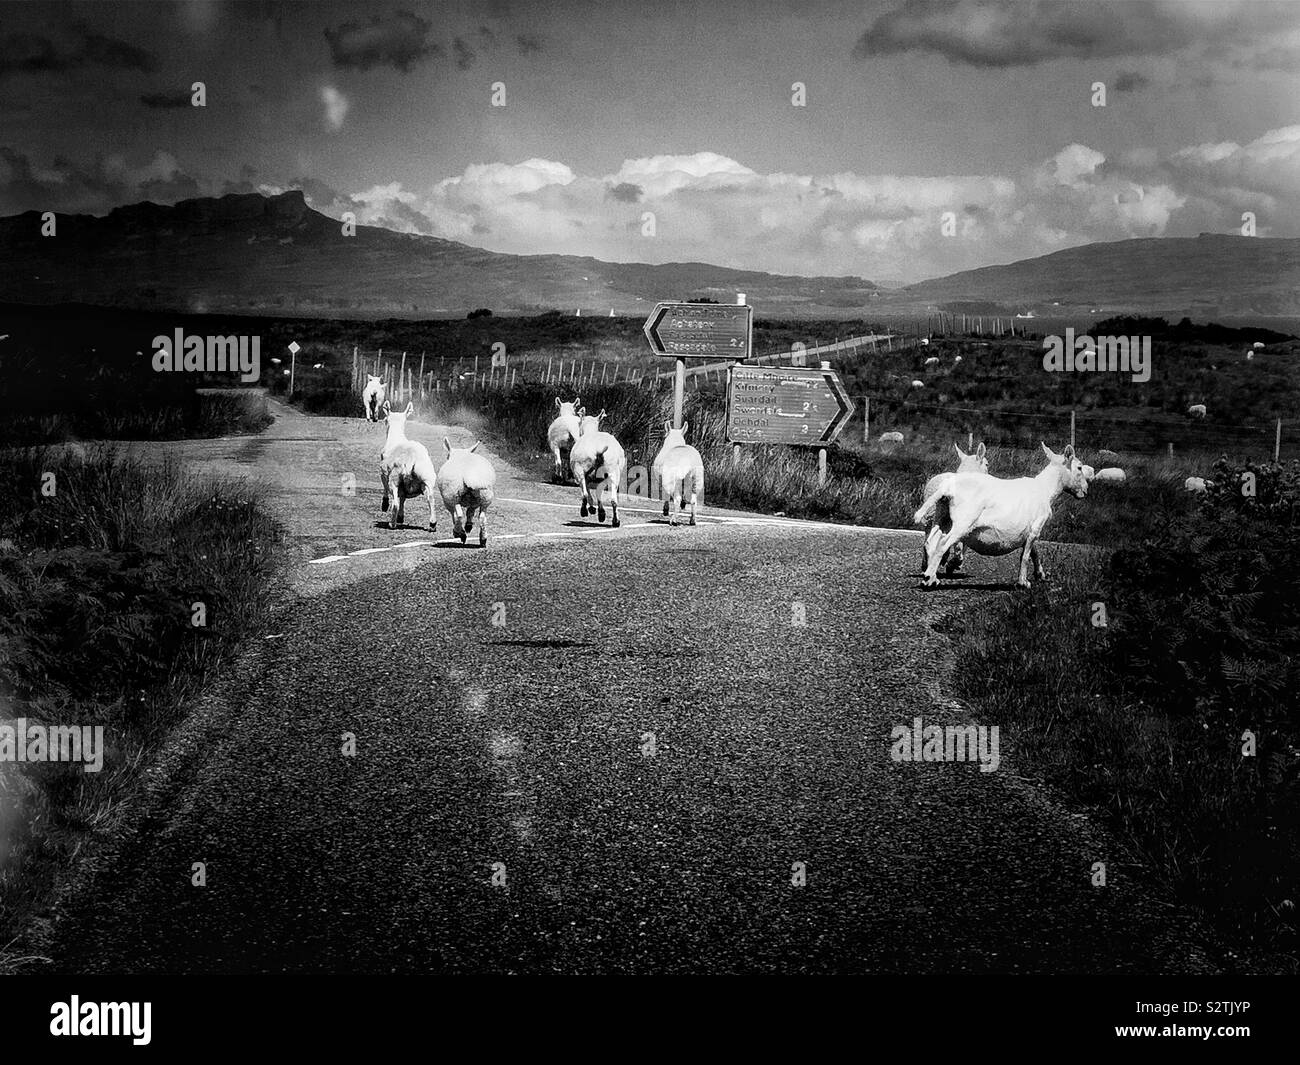 Image en noir et blanc de moutons à la jonction de route à voie unique parmi les paysages sauvages de l'urbanisme et de développement de la péninsule, en Écosse Banque D'Images